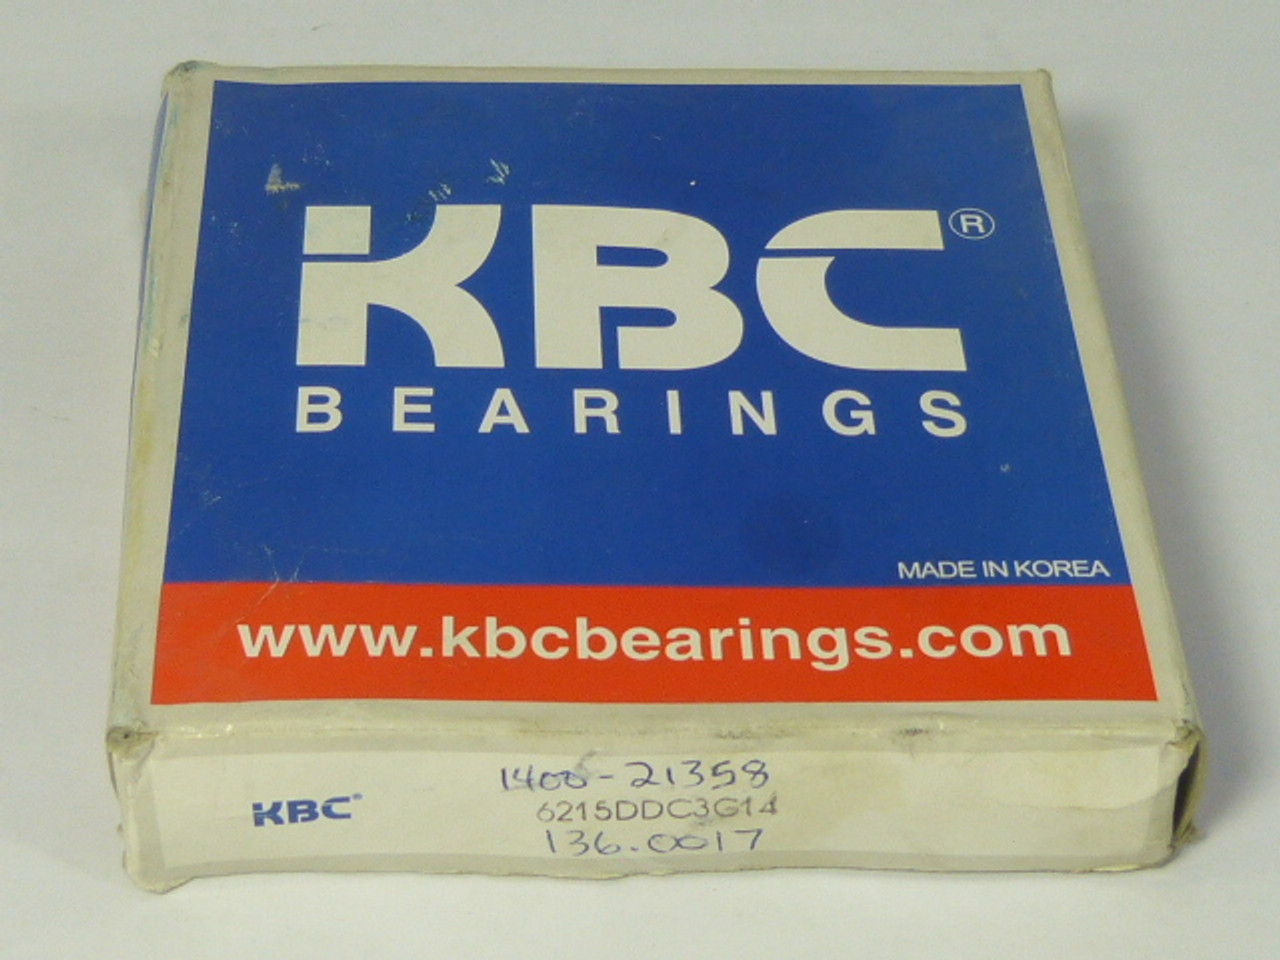 KBC Bearings 6215-DDC3G14 Bearings ! NEW !